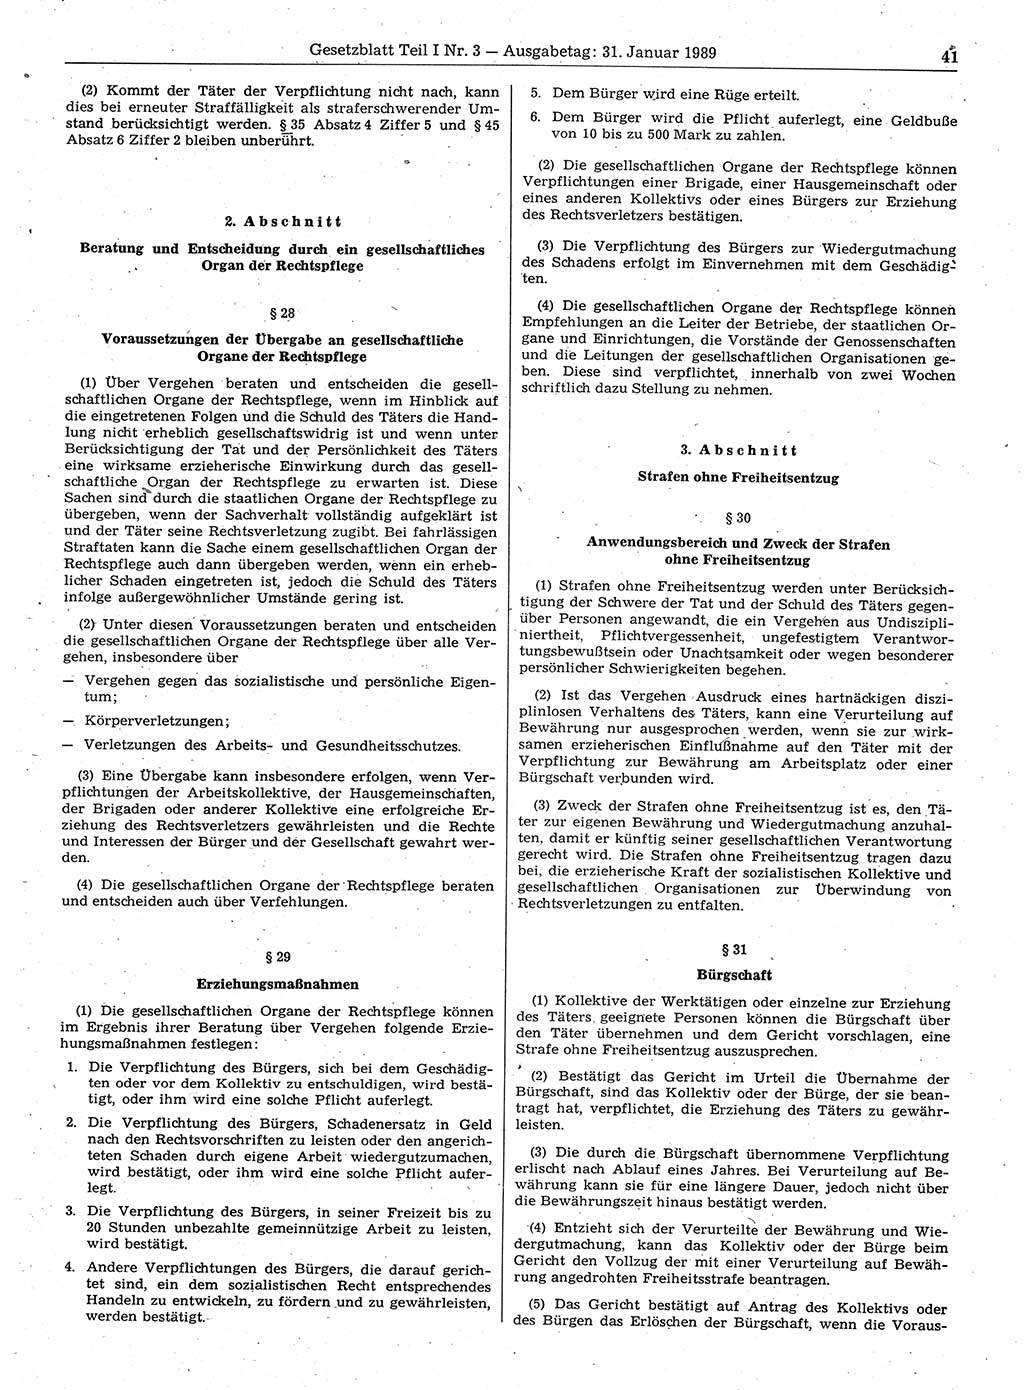 Gesetzblatt (GBl.) der Deutschen Demokratischen Republik (DDR) Teil Ⅰ 1989, Seite 41 (GBl. DDR Ⅰ 1989, S. 41)